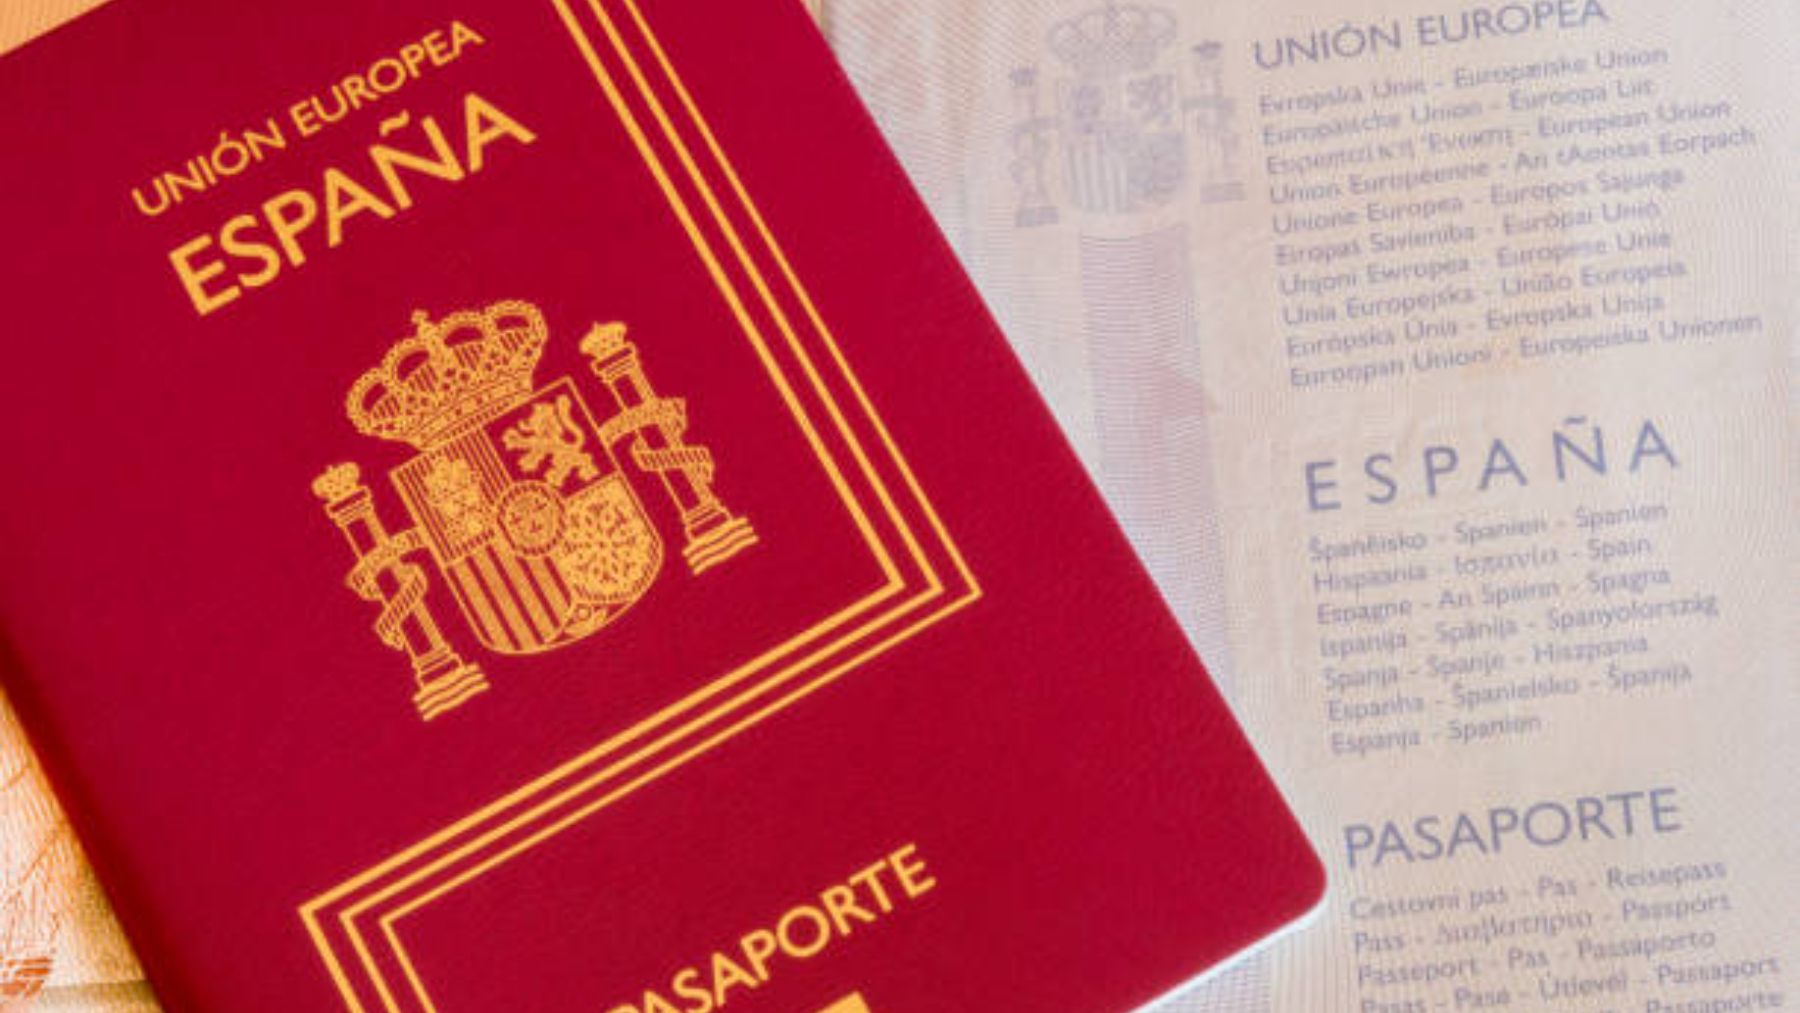 Los países a los que da acceso el pasaporte español